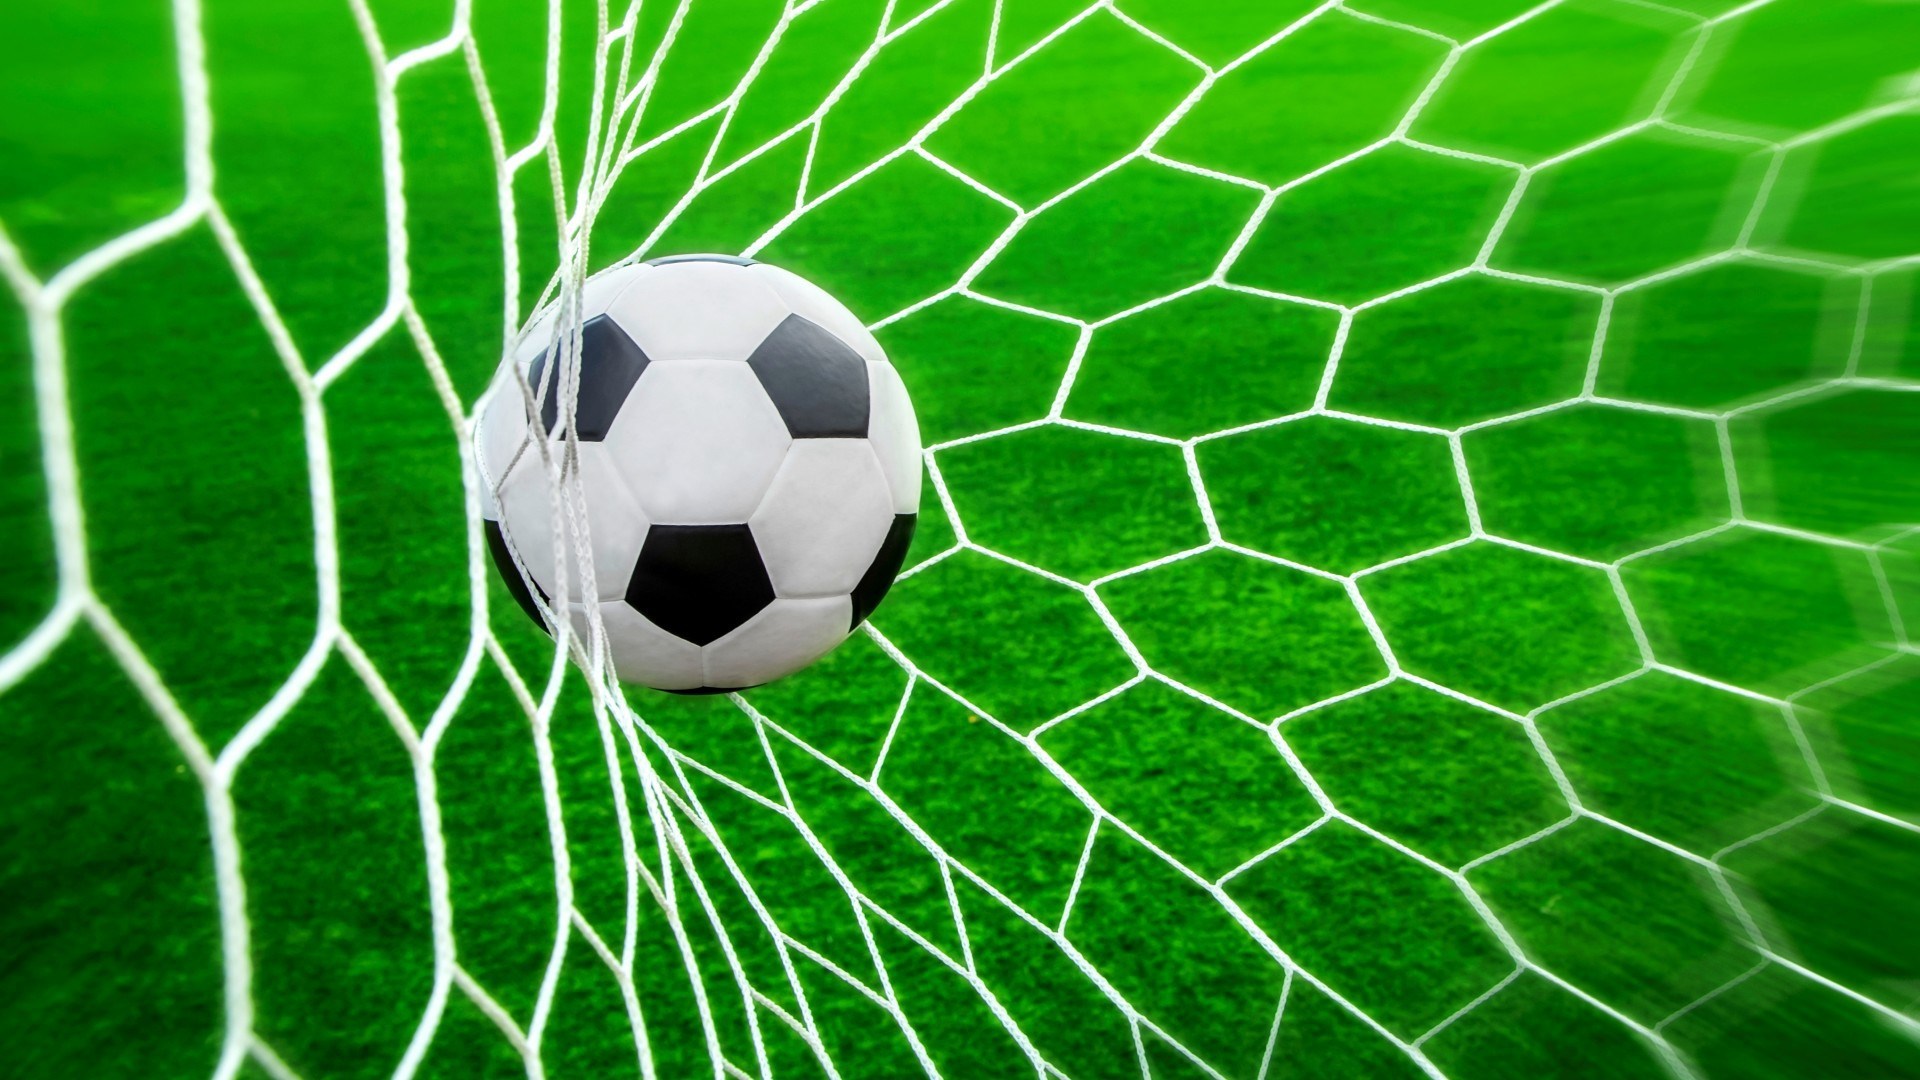 Football Net And Ball - HD Wallpaper 